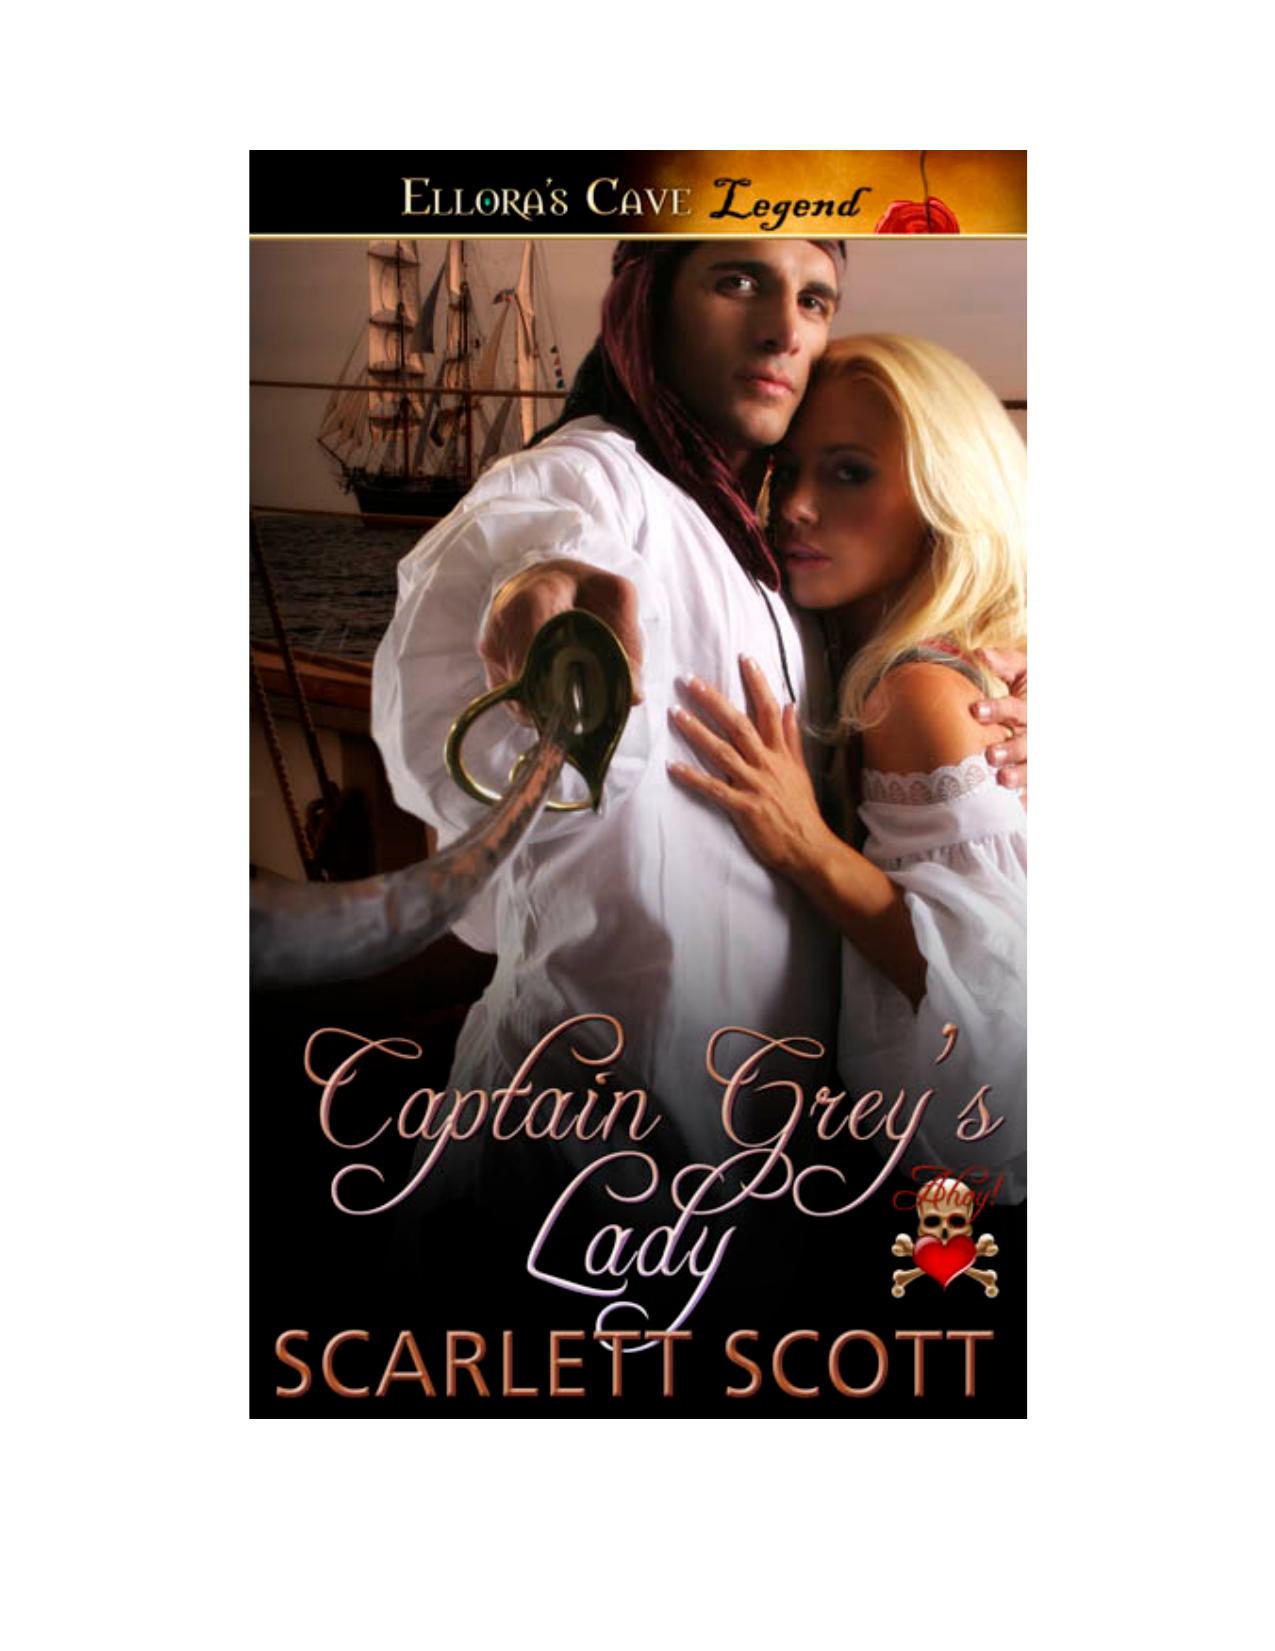 Captain Grey's Lady by Scarlett Scott